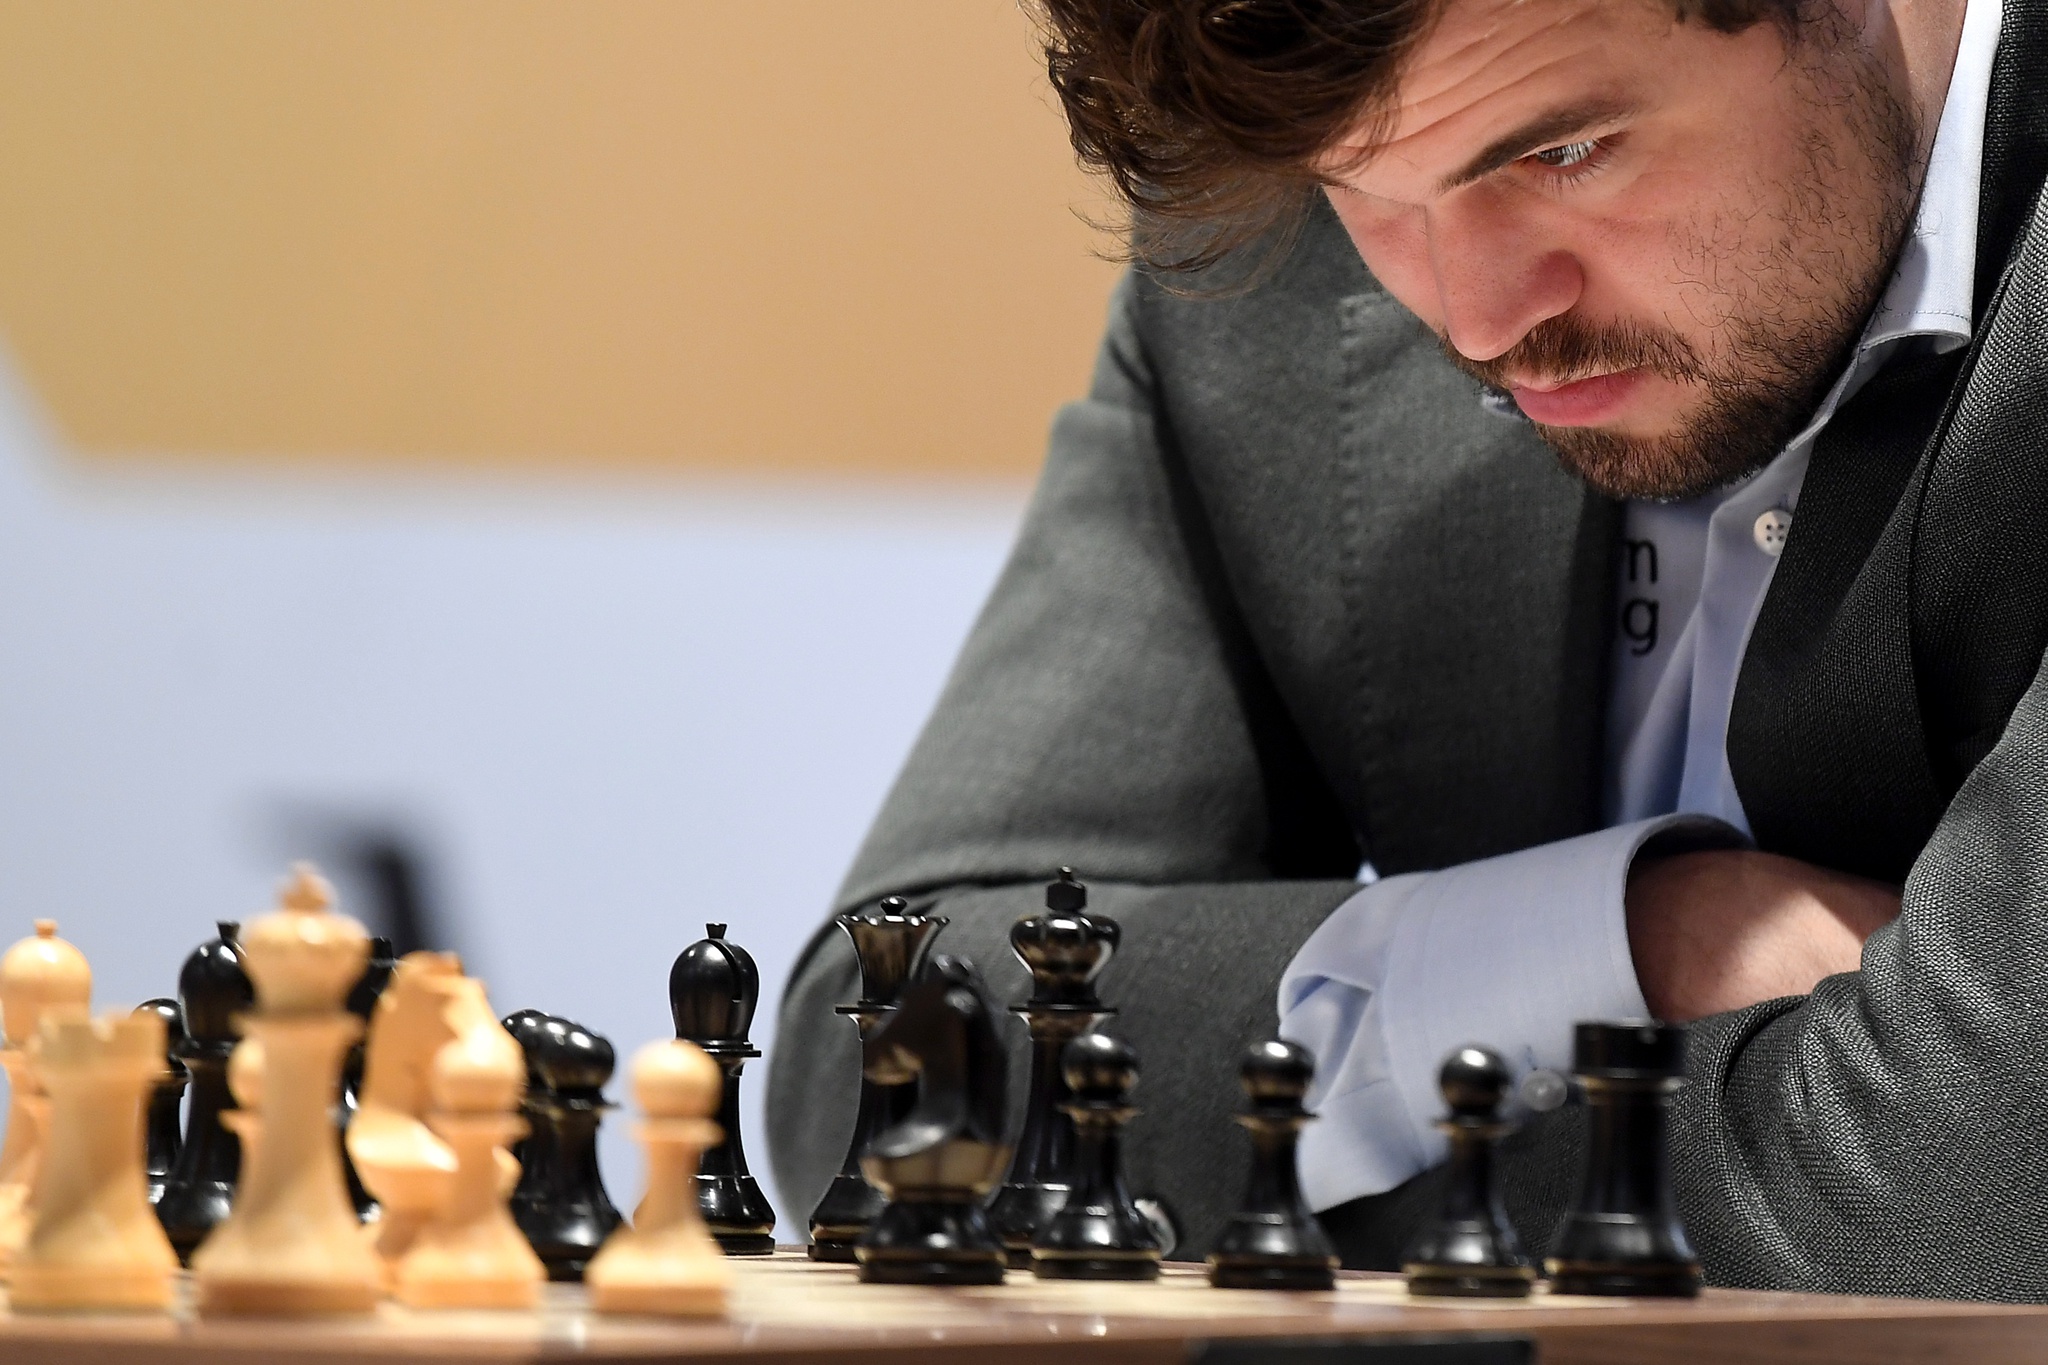 Magnus Carlsen, o melhor jogador de xadrez de sempre, desistiu de uma  partida após a primeira jogada. Mas porquê? – Observador